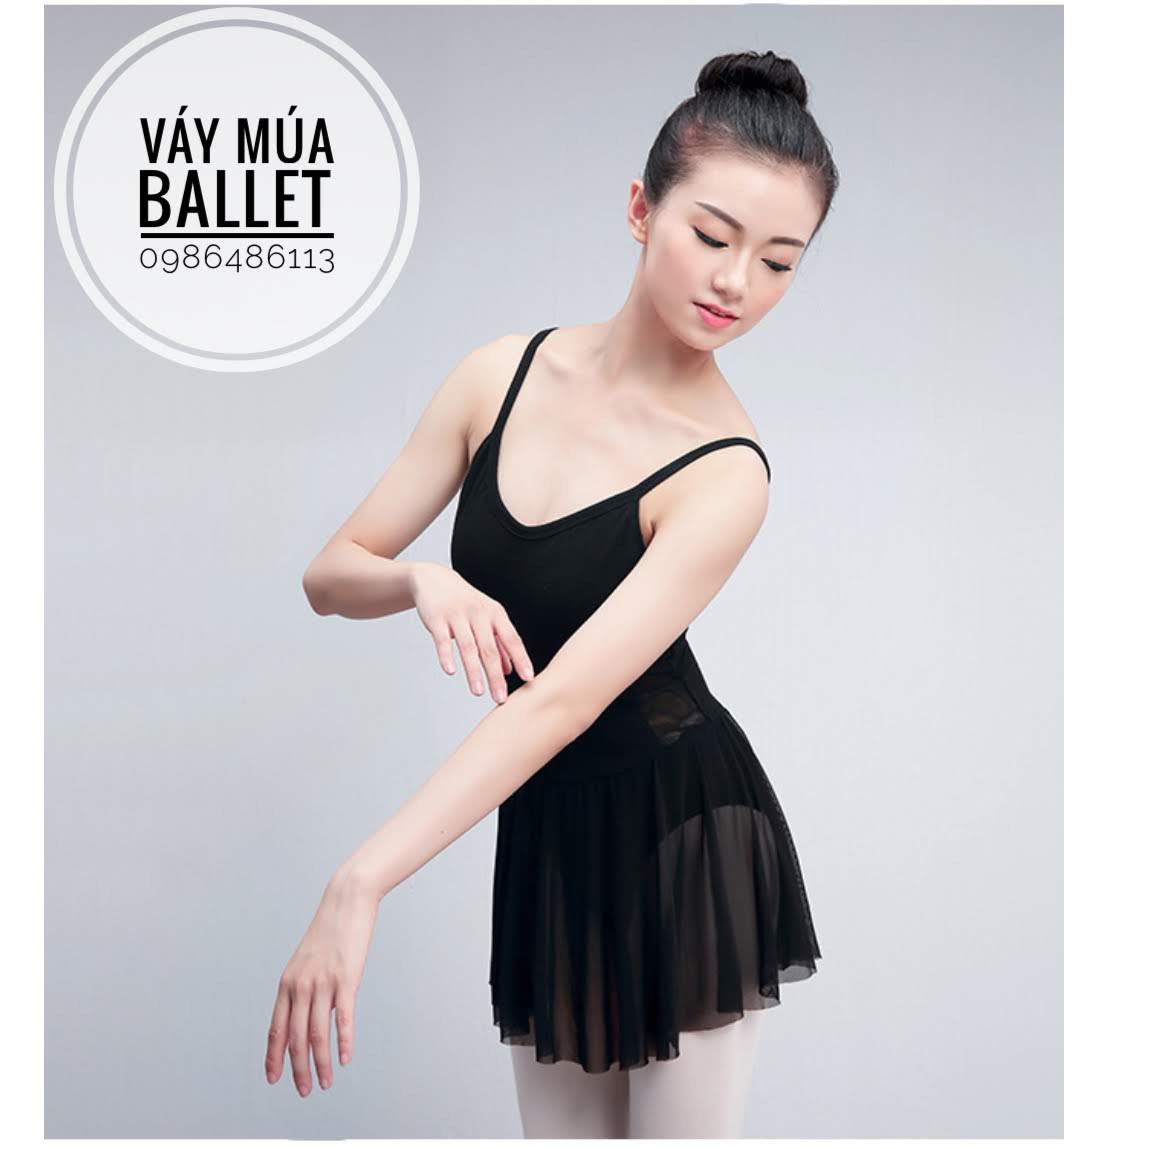 Chân Váy Xòe Tutu 5 lớp ren lưới Co Giãn múa Ballet Dành Cho 14 tuổi trở  lên và người lớn - hàng nhập khẩu - Tìm Voucher